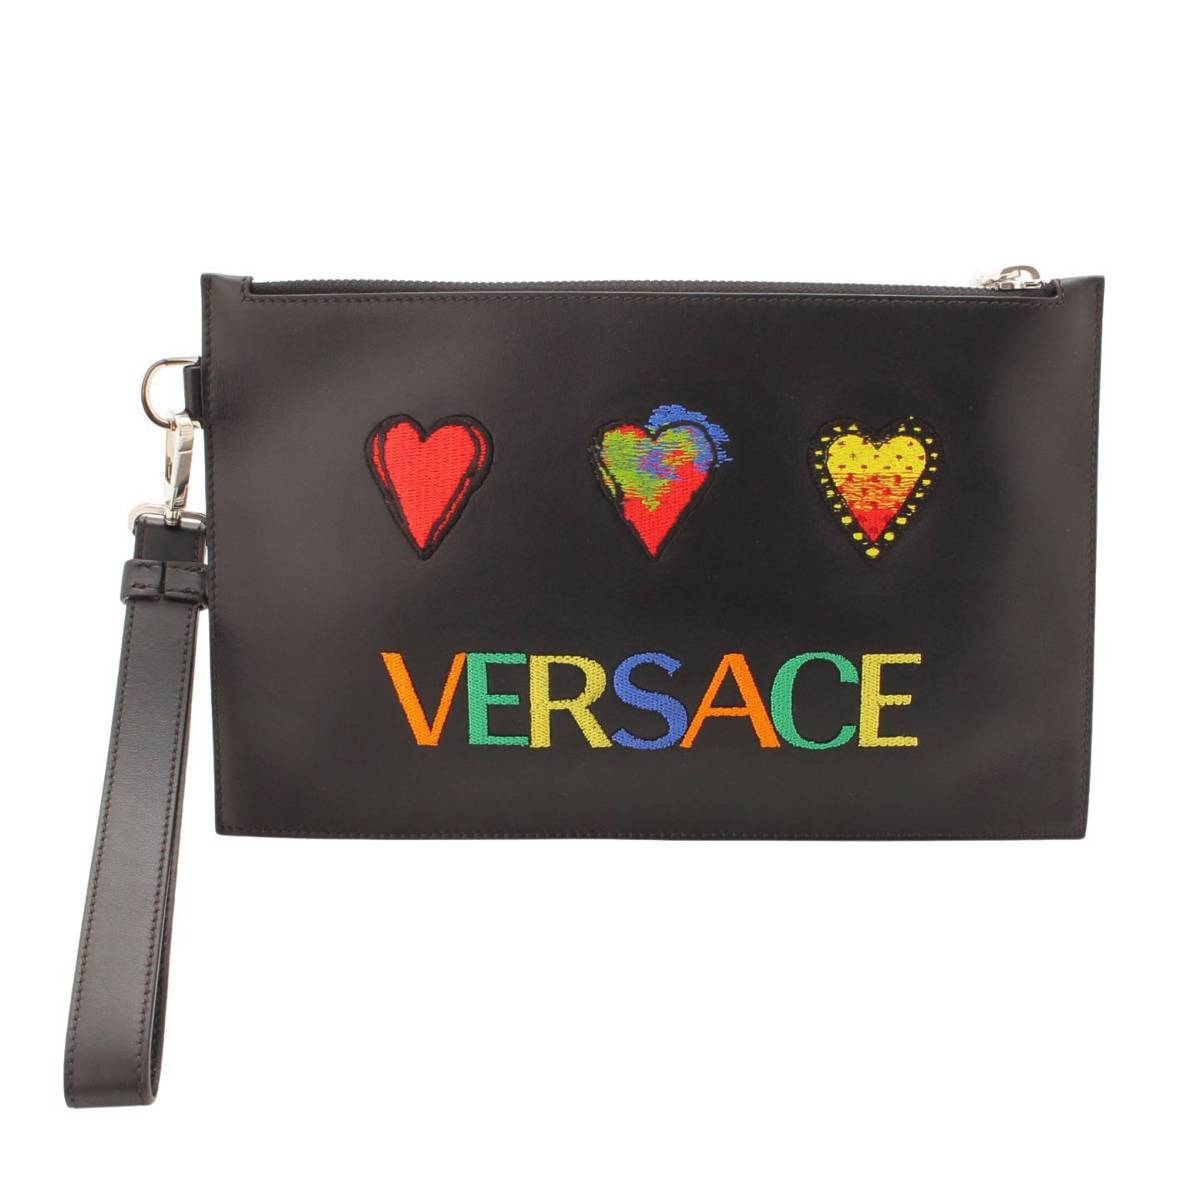 Versace フラワーレザー クラッチバッグ